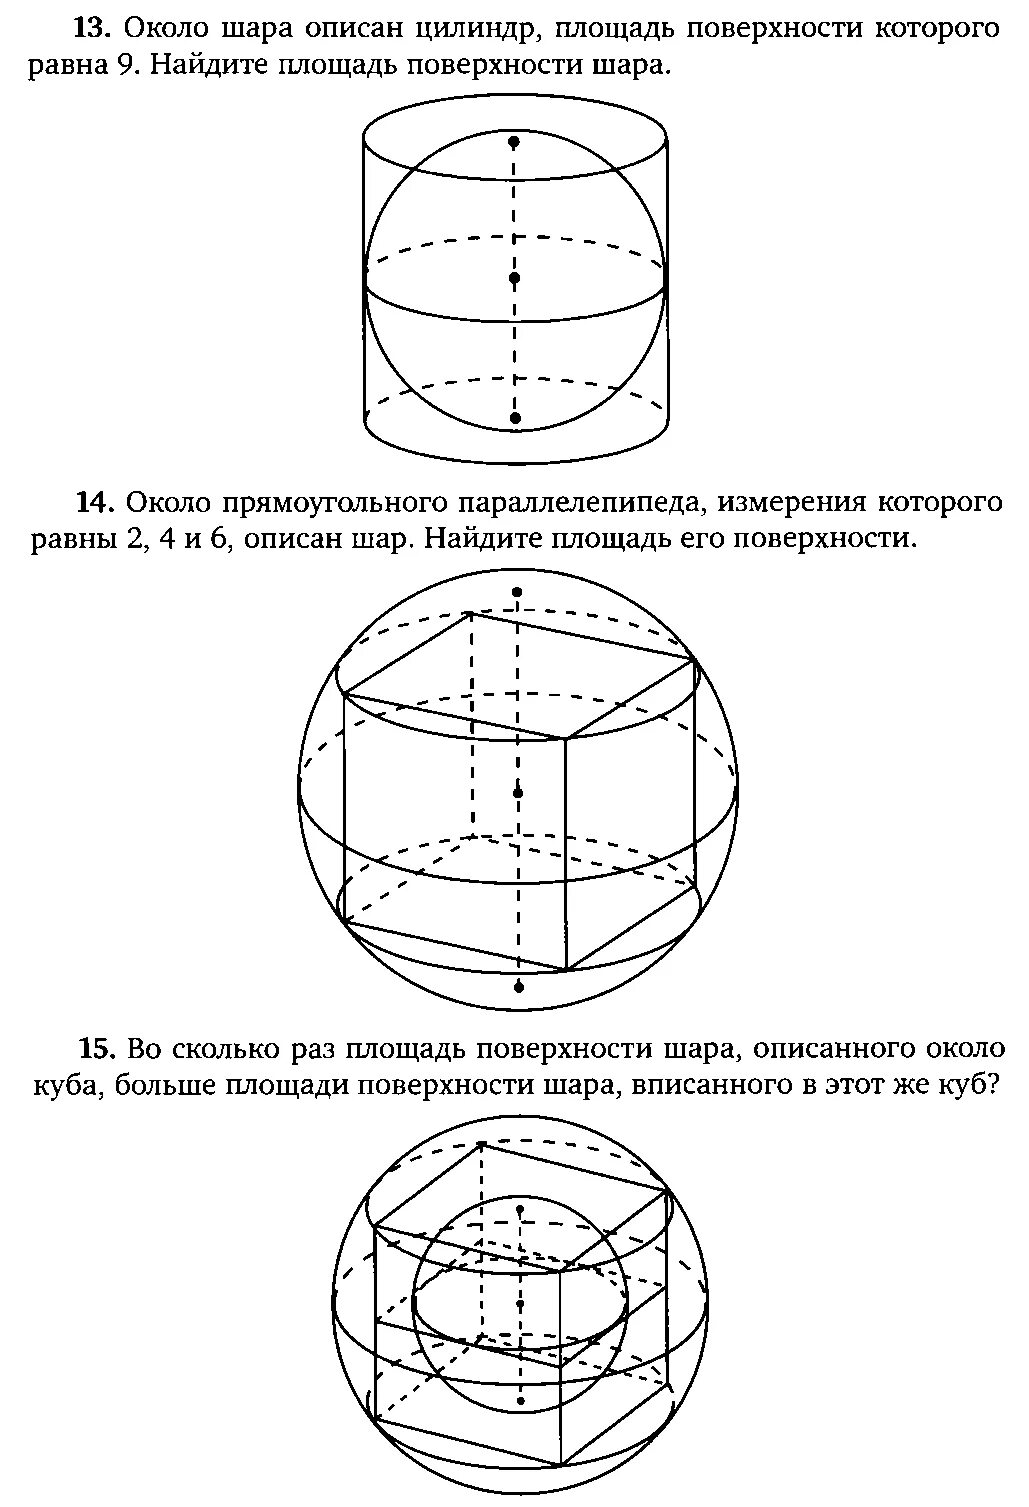 Шар вписан в цилиндр отношение объемов. Площадь поверхности Куба описанного около сферы. Площадь Куба вписанного в шар. Цилиндр описан около шара. Объем цилиндра вписанного в куб.